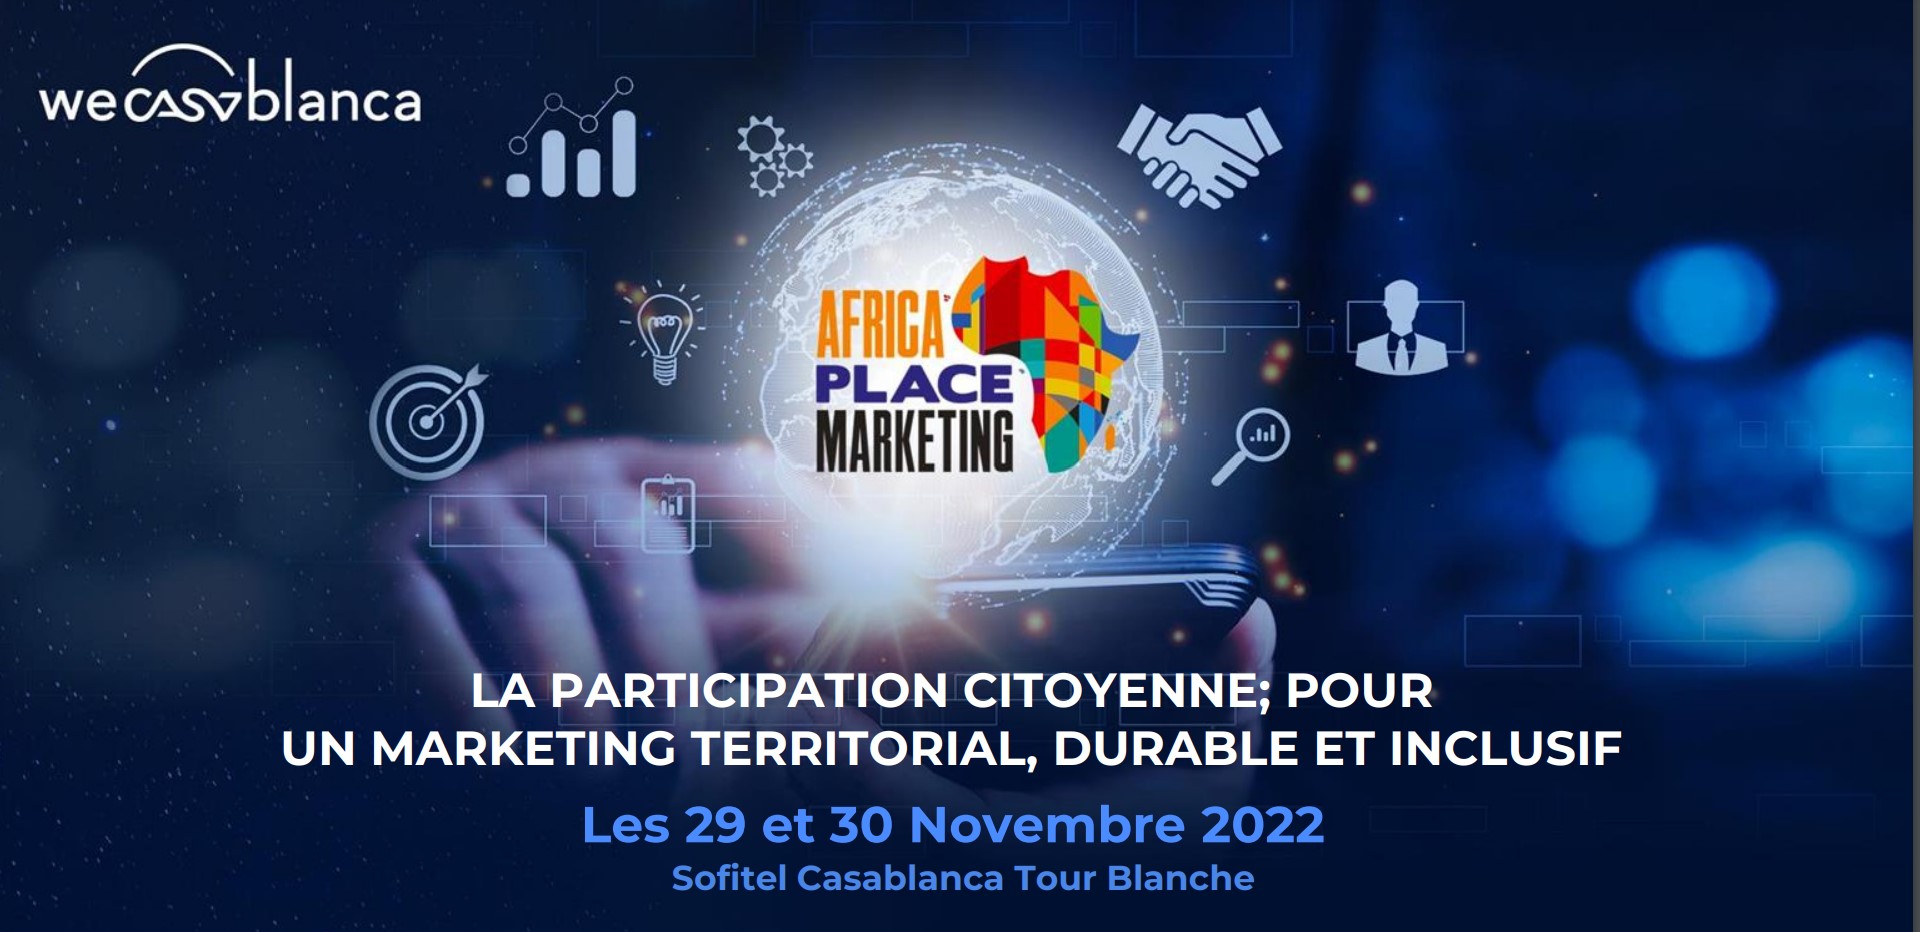 Casablanca abrite la 3ème édition de l’Africa Place Marketing